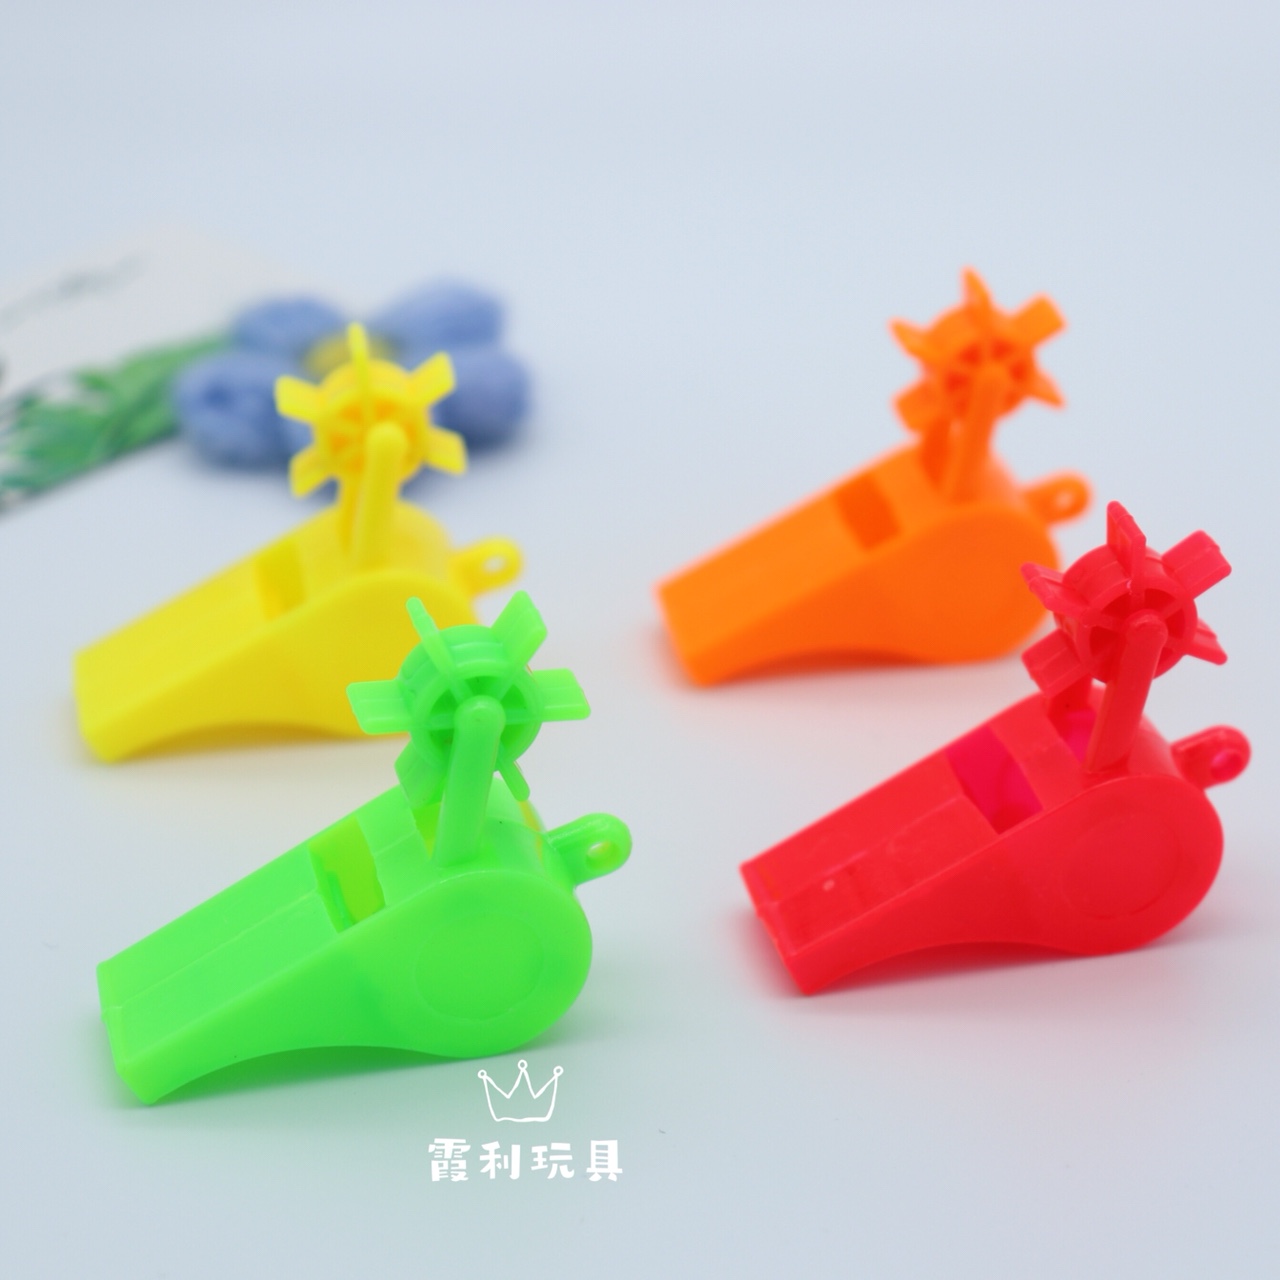 风车口哨 儿童塑料玩具 赠品扭蛋派对玩具